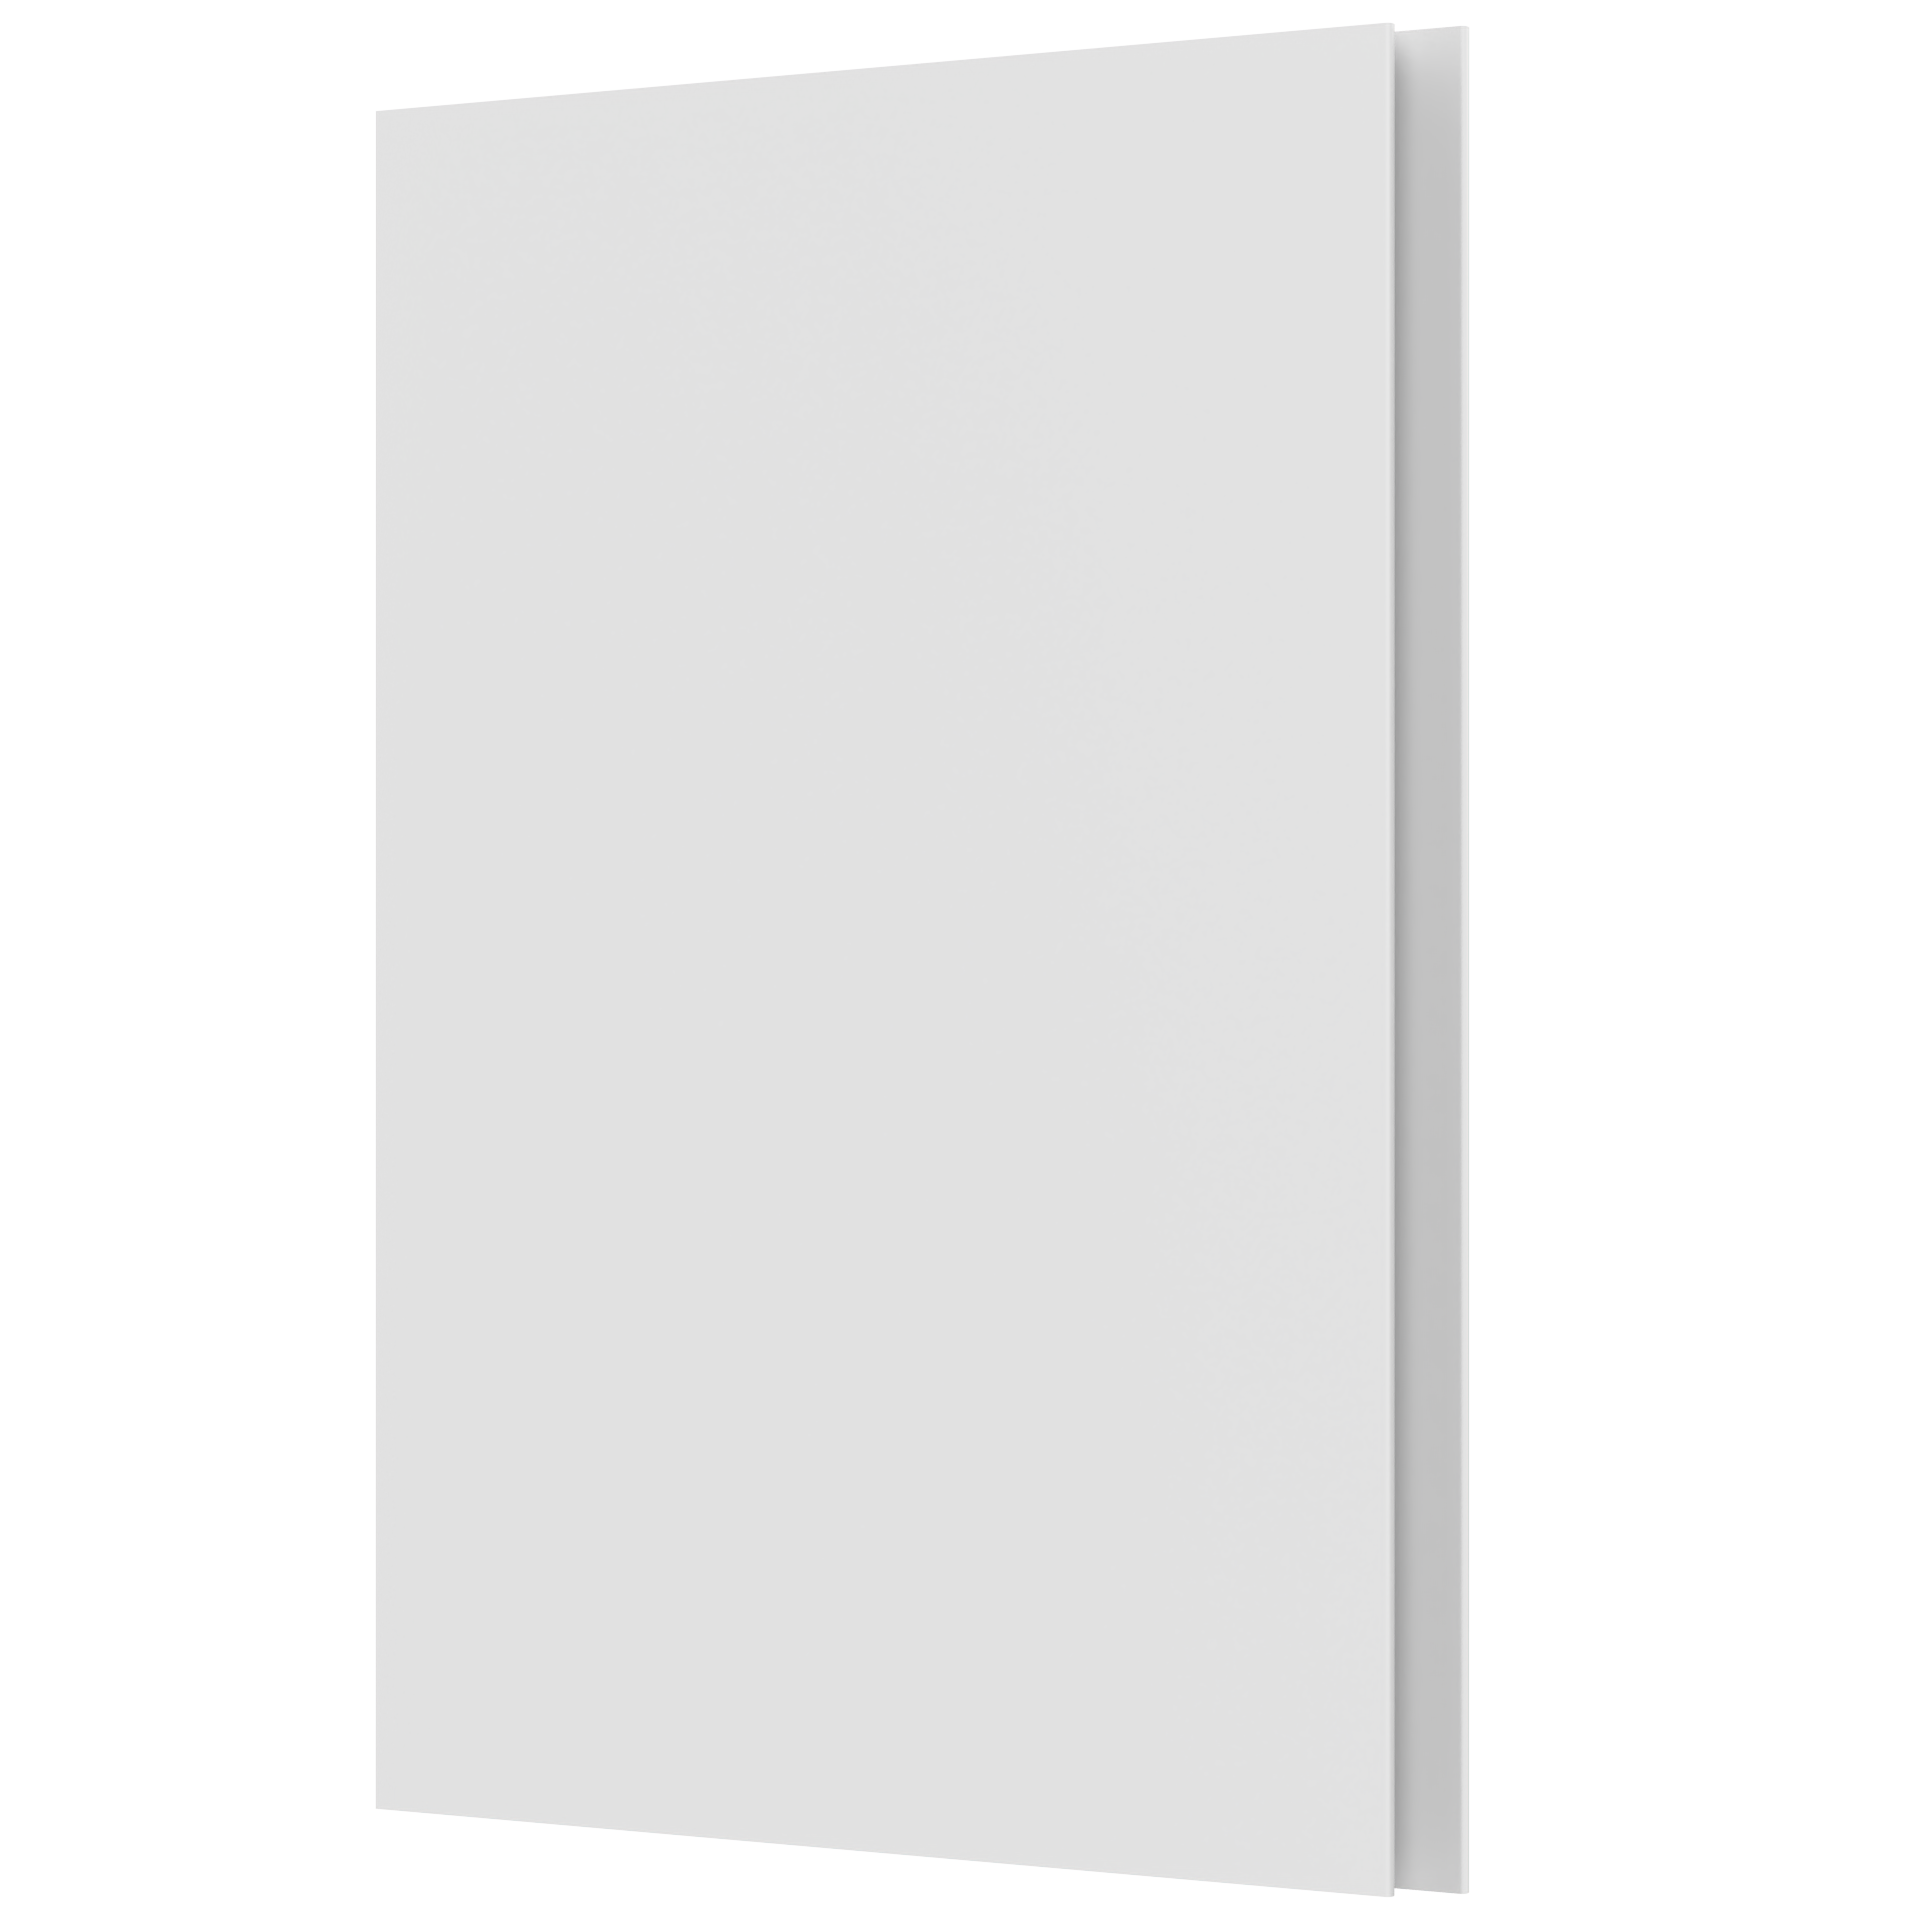 Gripe - Sample door - fronts by sweden